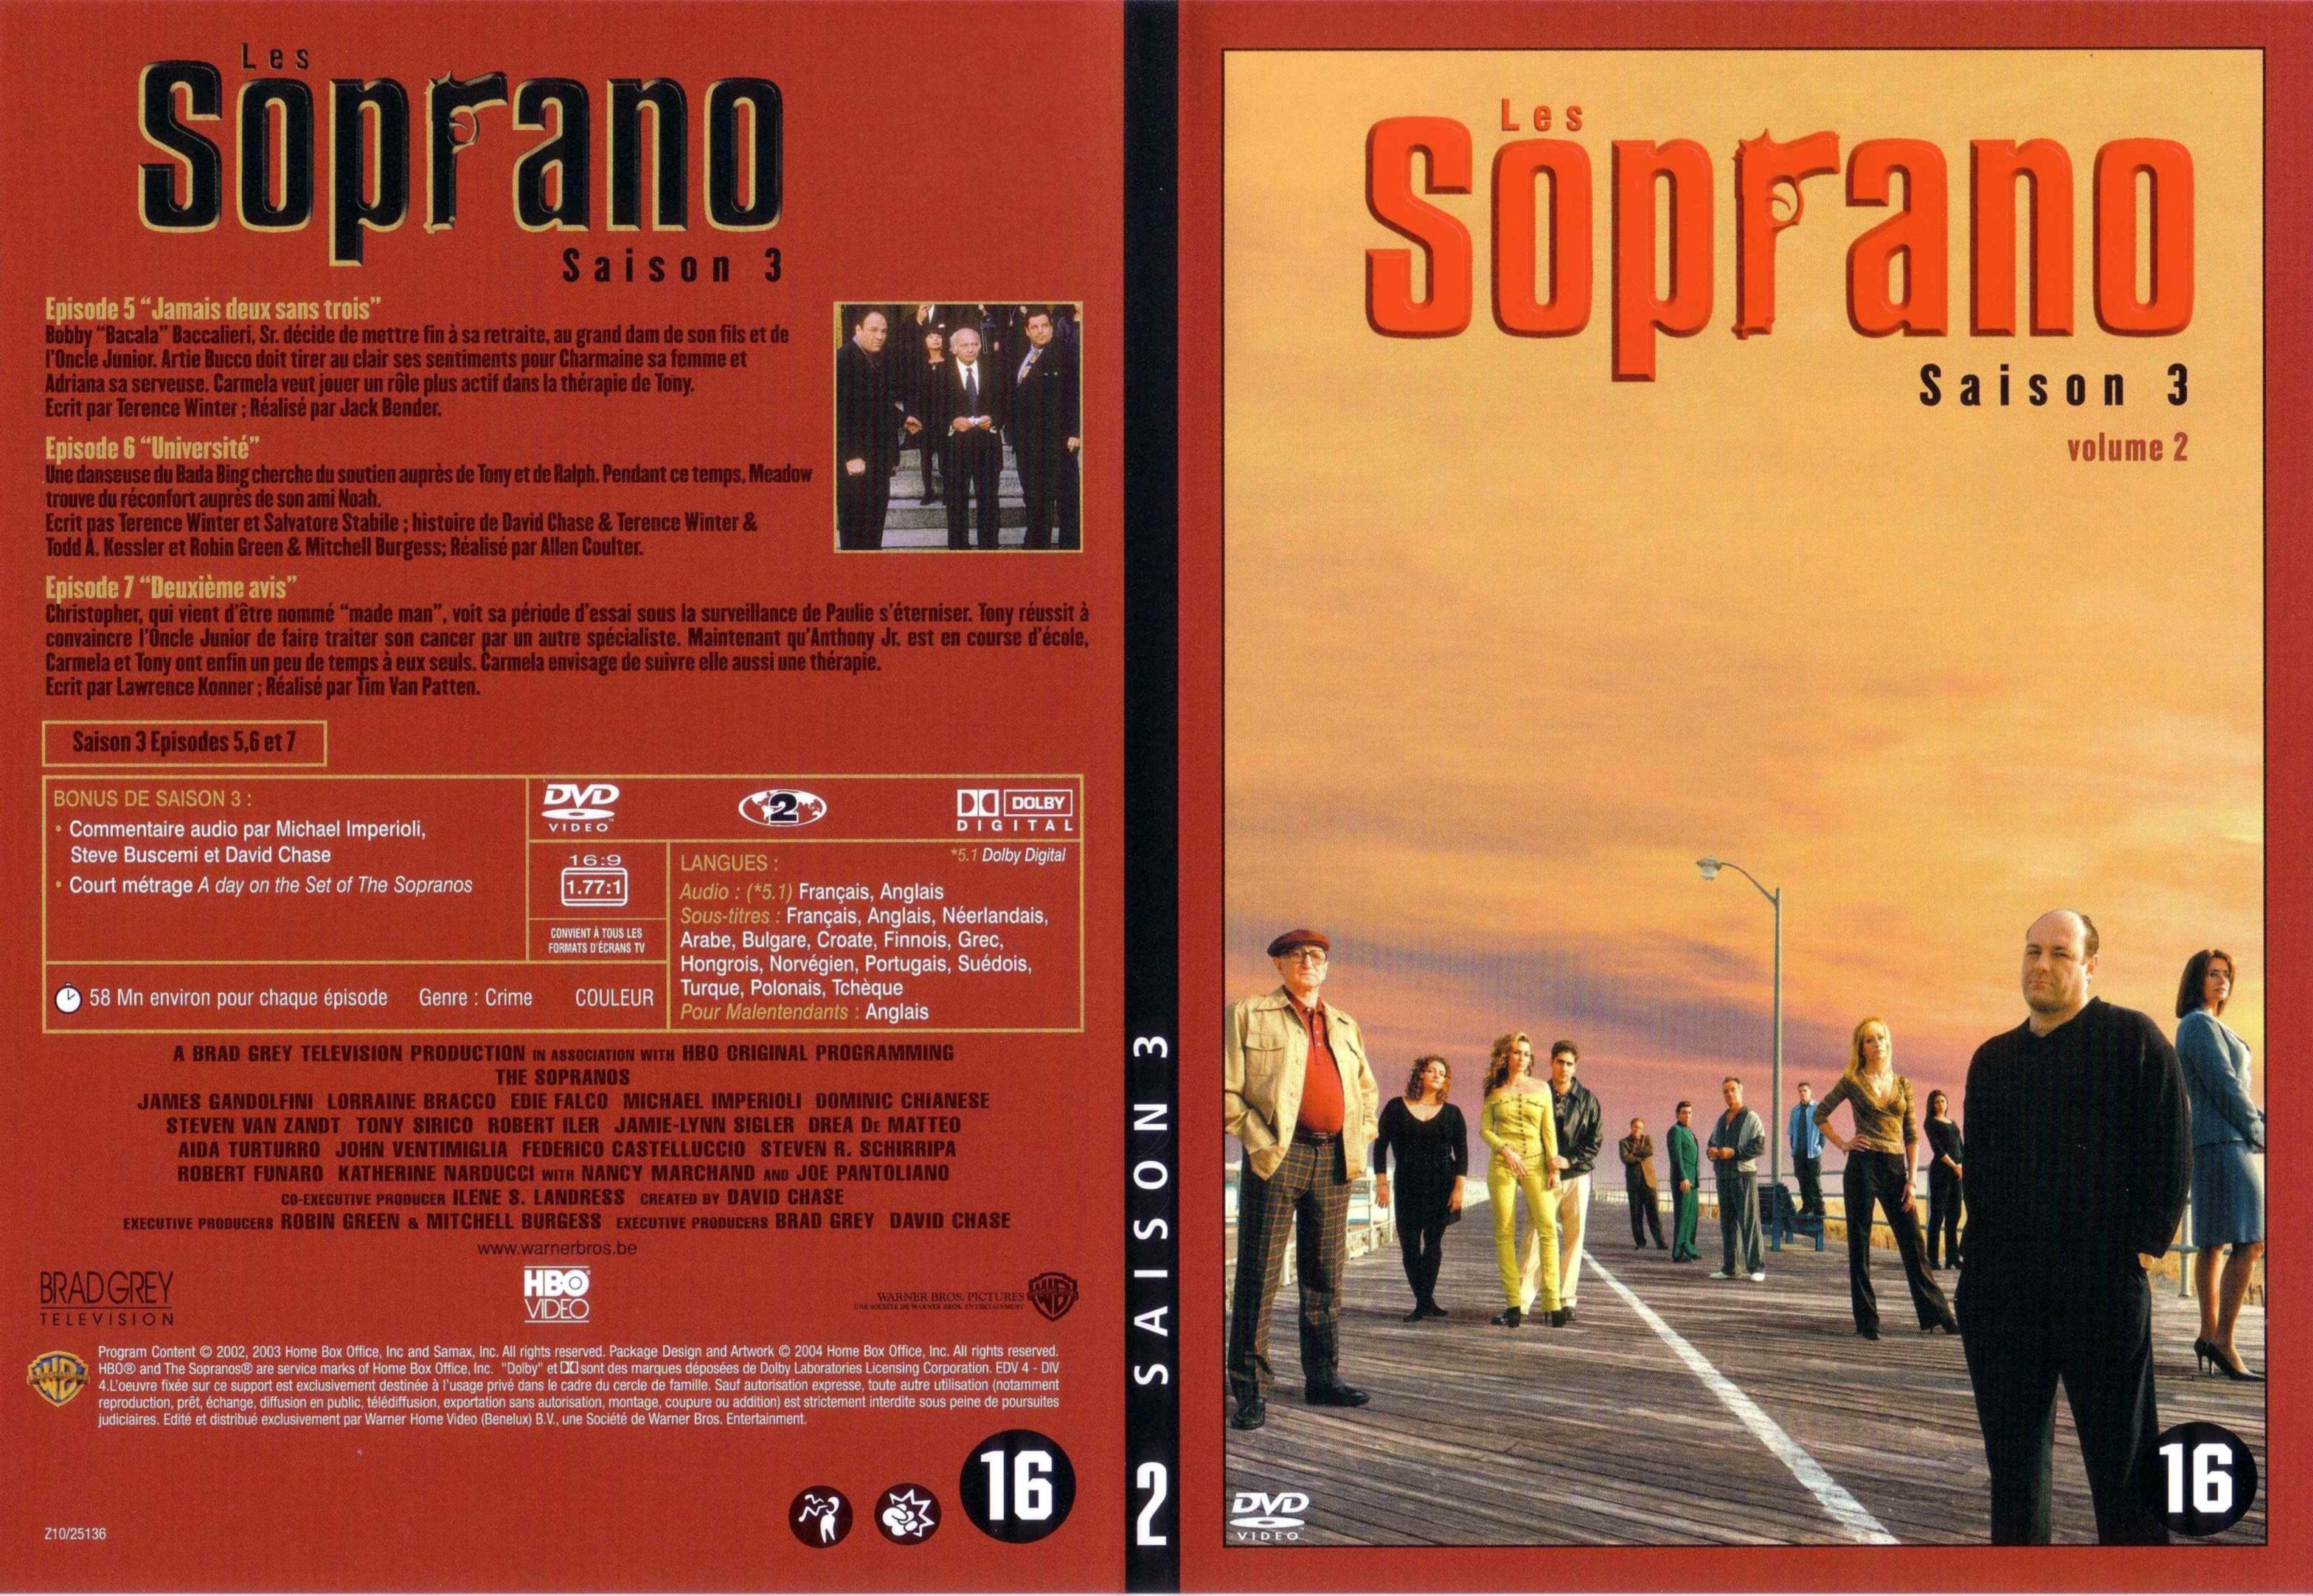 Jaquette DVD Les Soprano saison 3 DVD 2